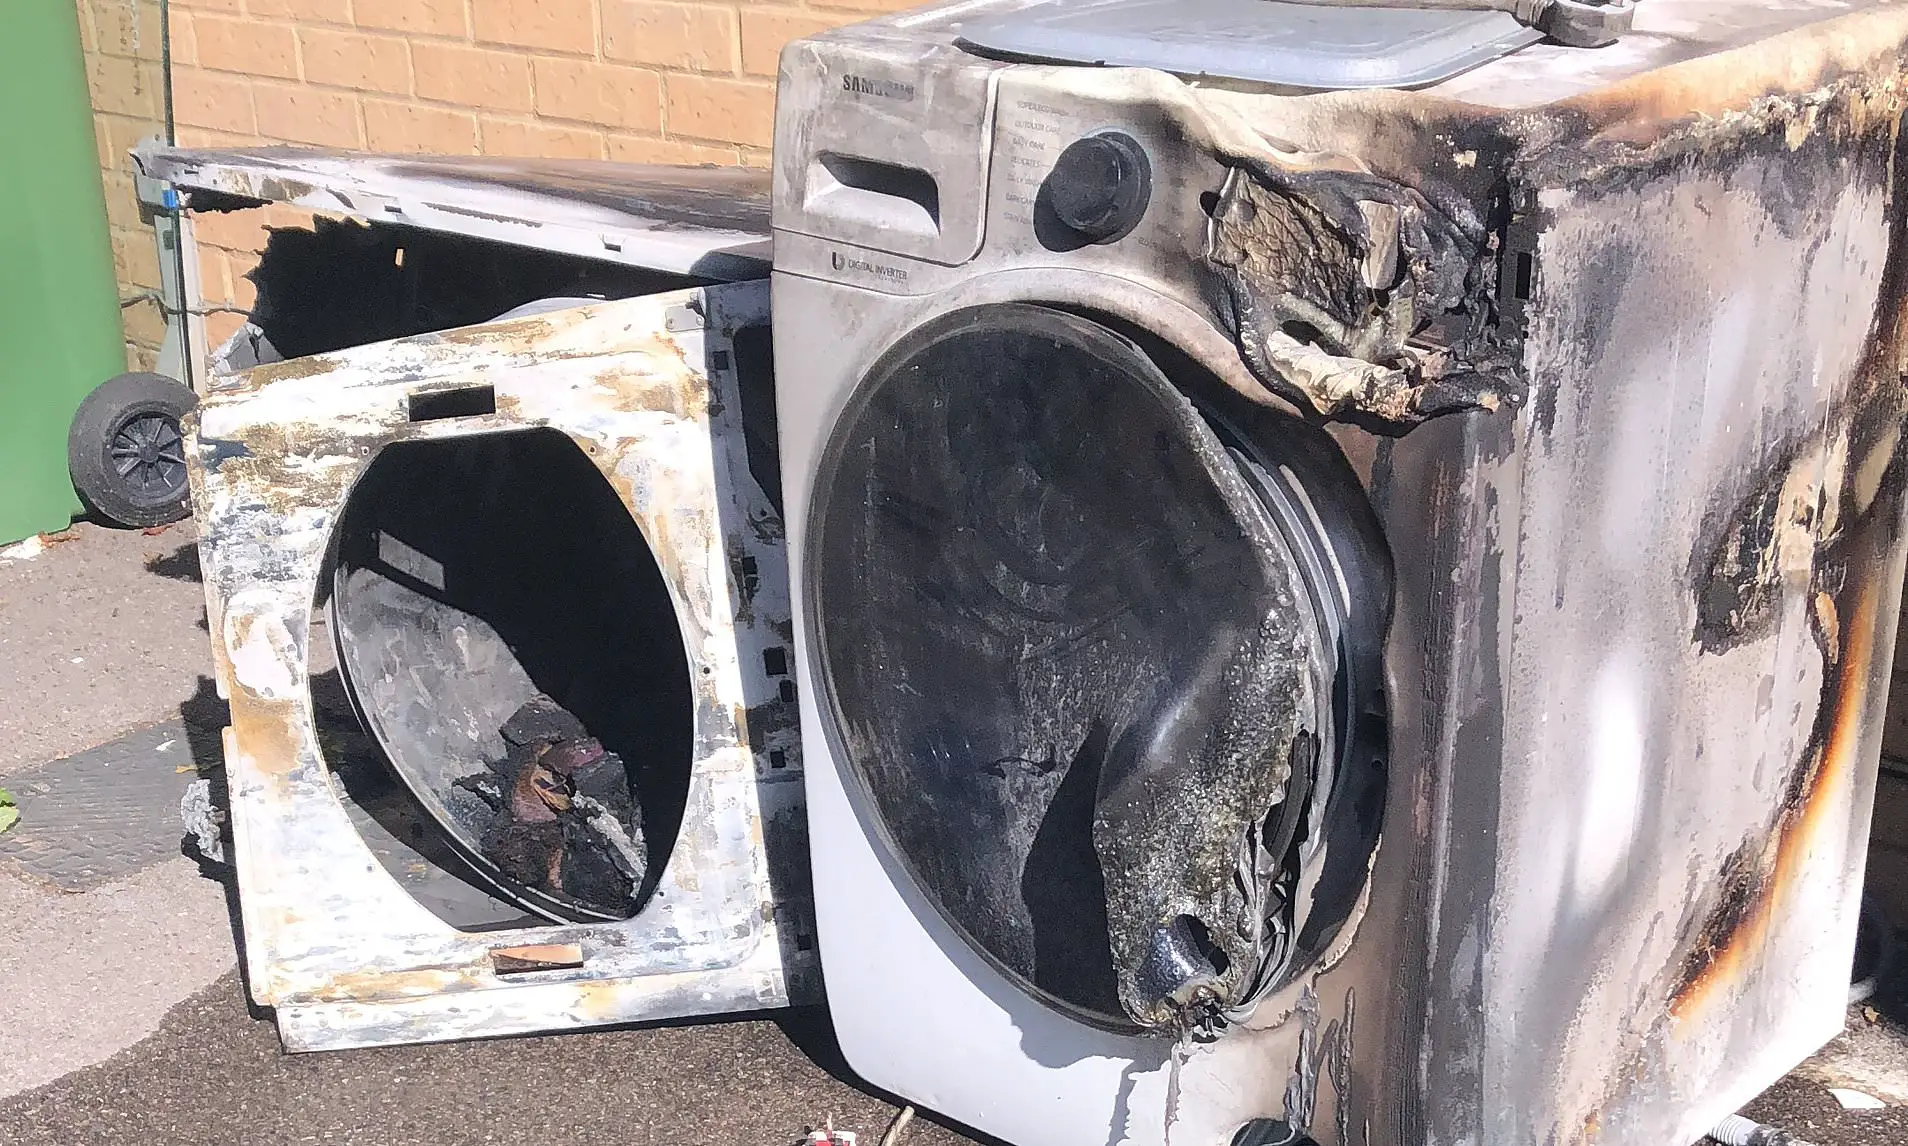 Can a Washing Machine Catch Fire